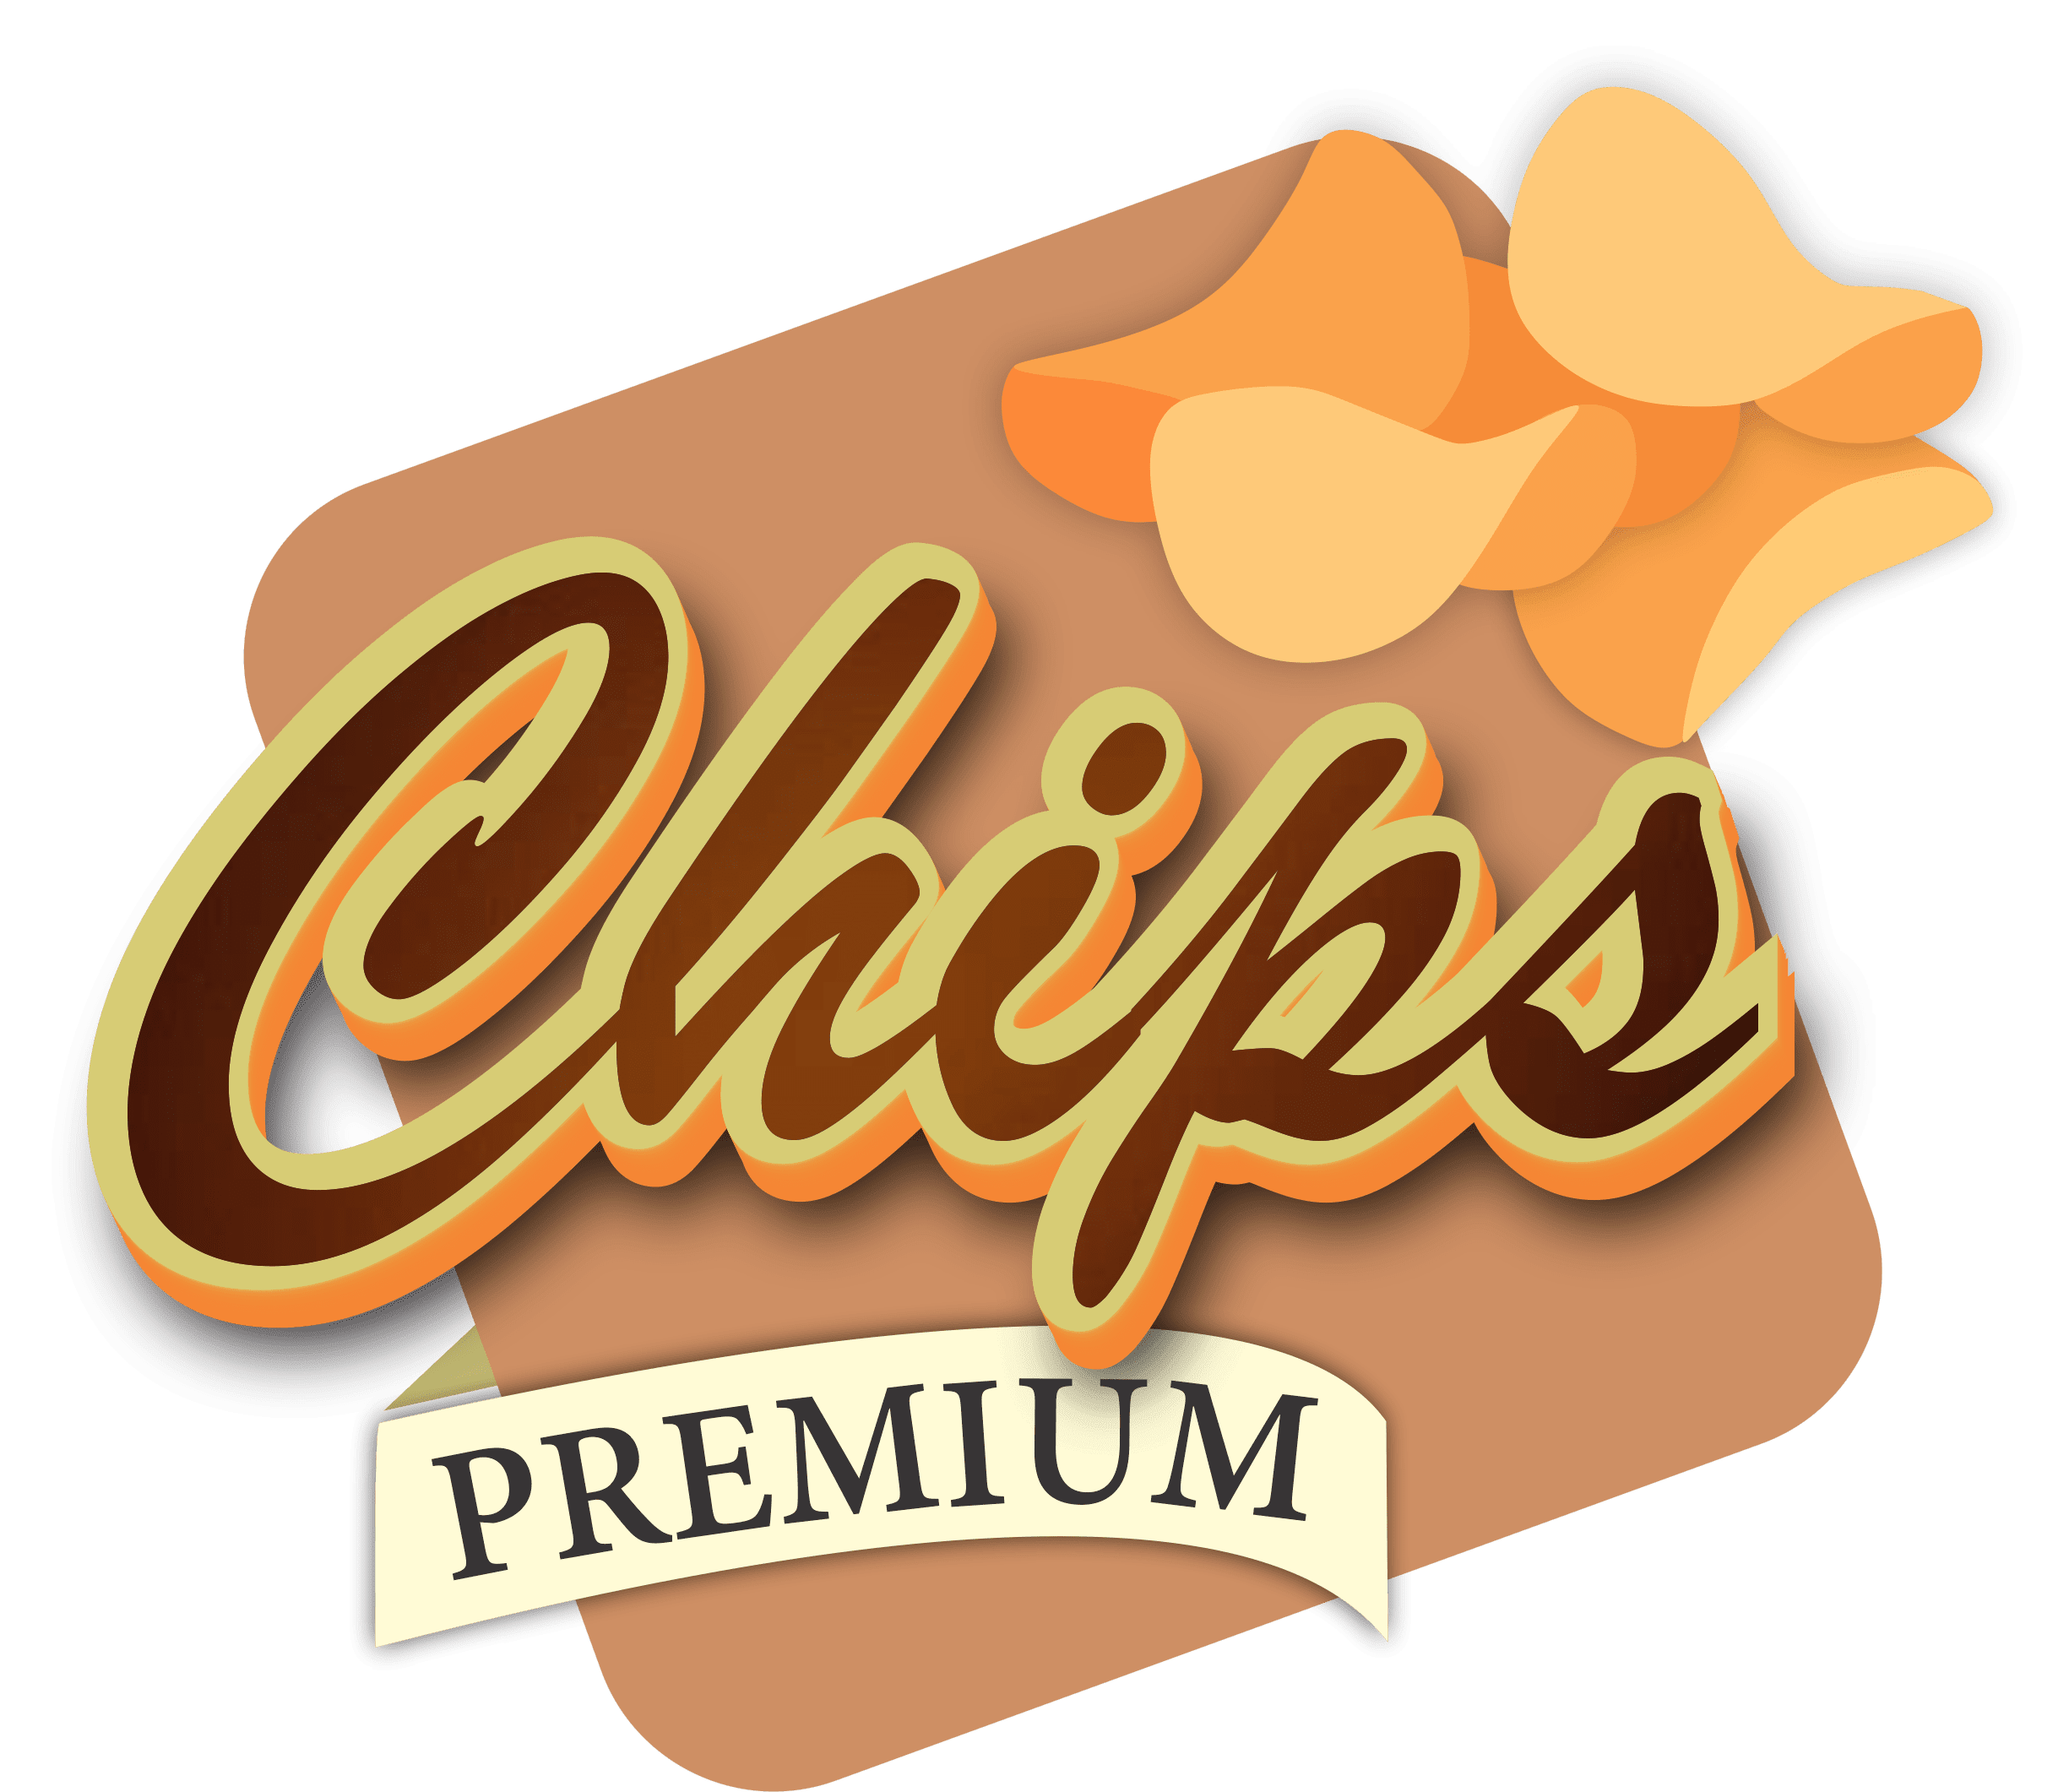 Chips Premium